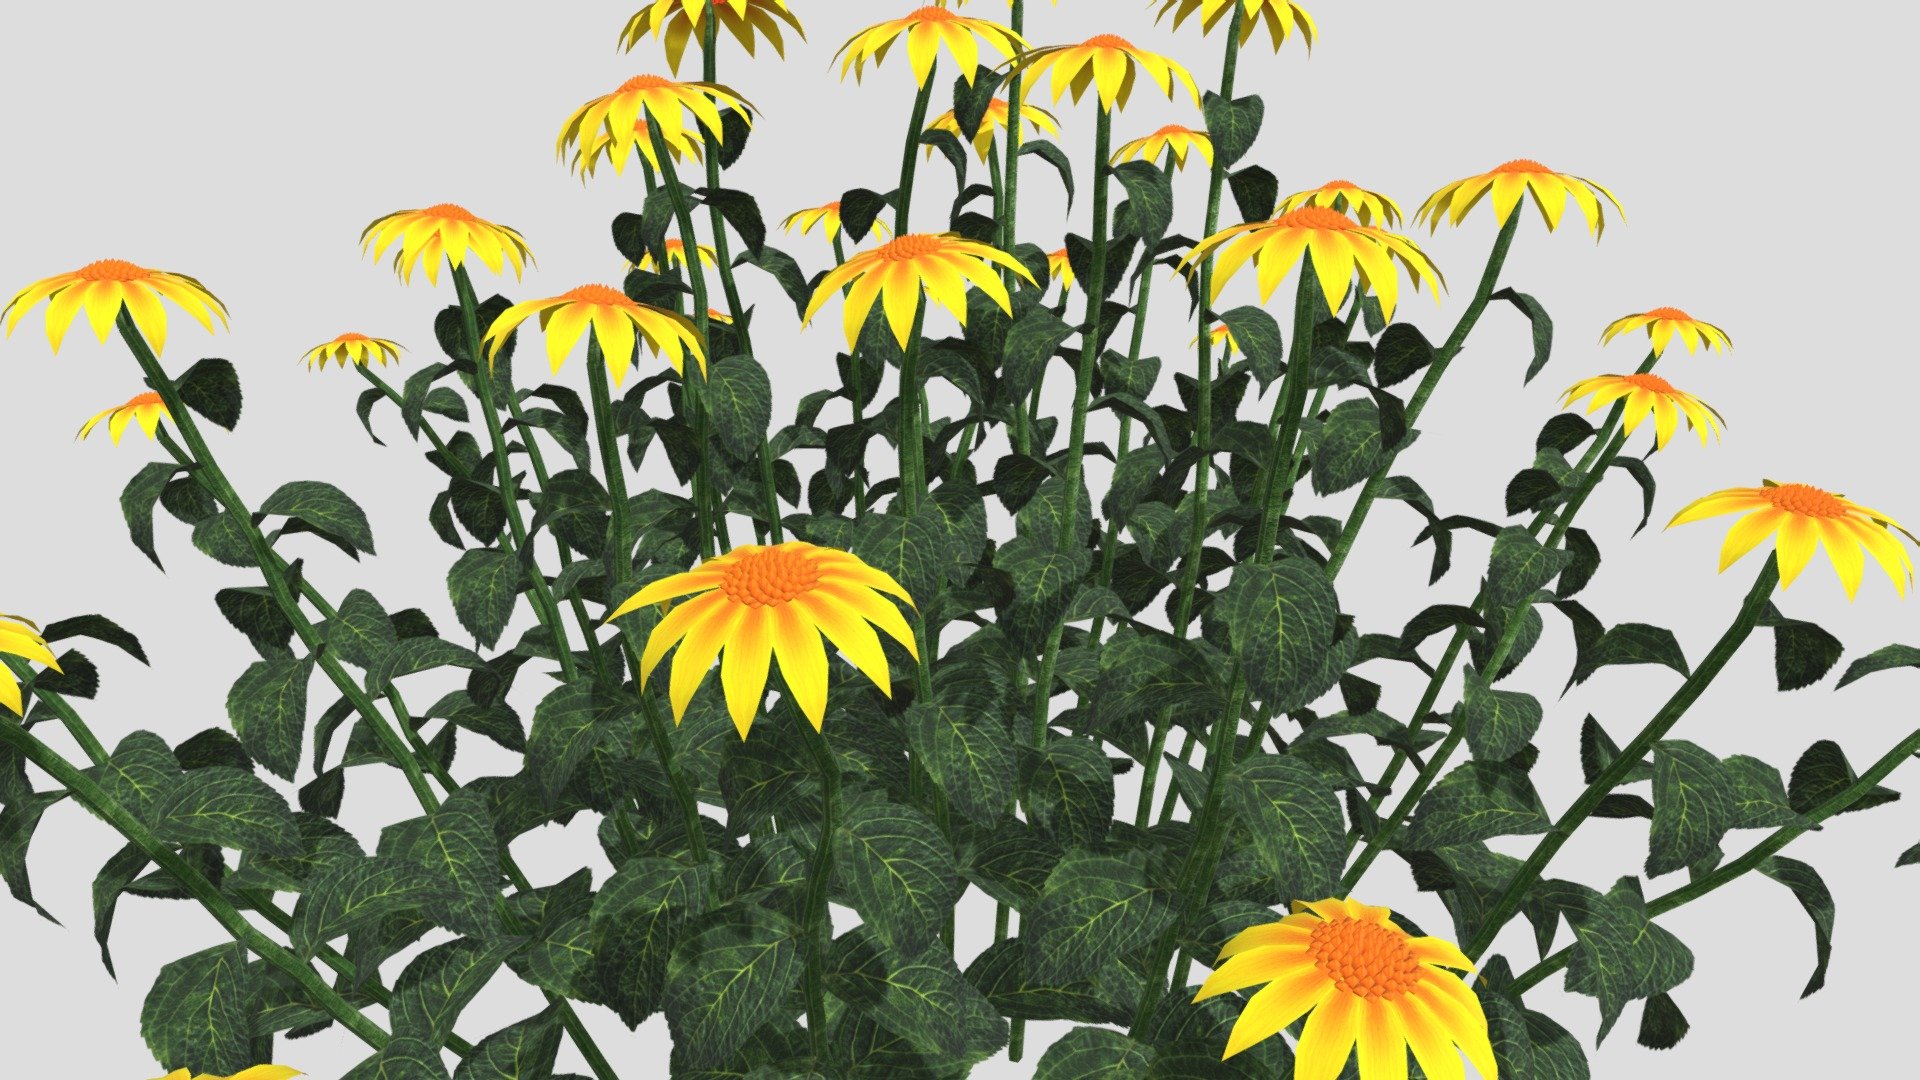 Echinacea Flower 3d model, File formats in the attached folder: 3ds, c4d, obj, stl 3d model